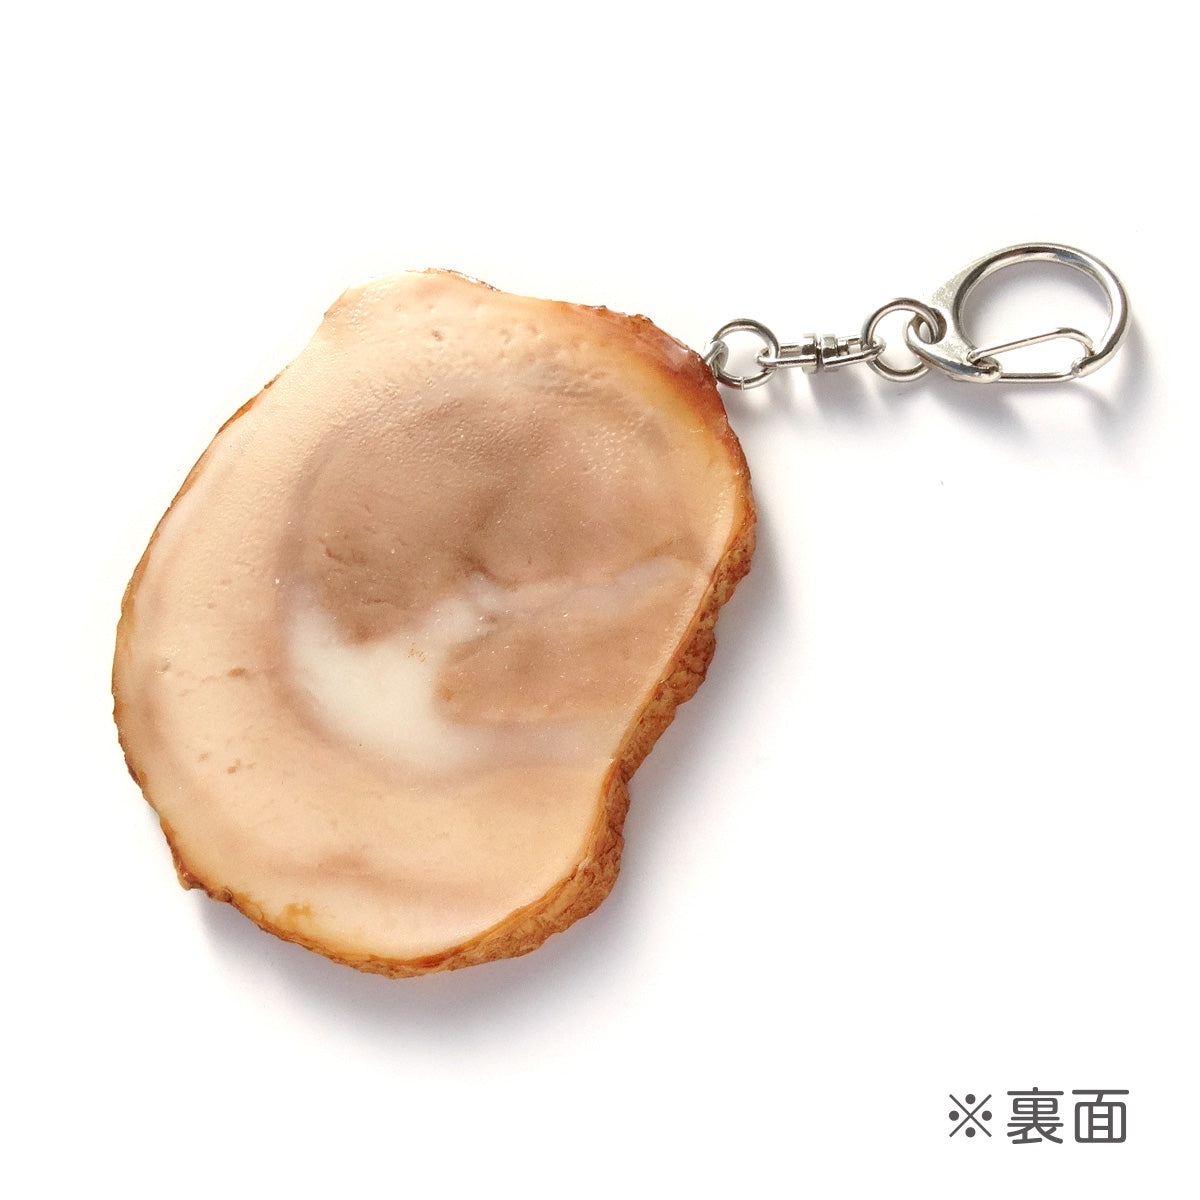 これは 食品サンプル(IWASAKI)「チャーシューのキーリング 」の裏面の商品画像です。